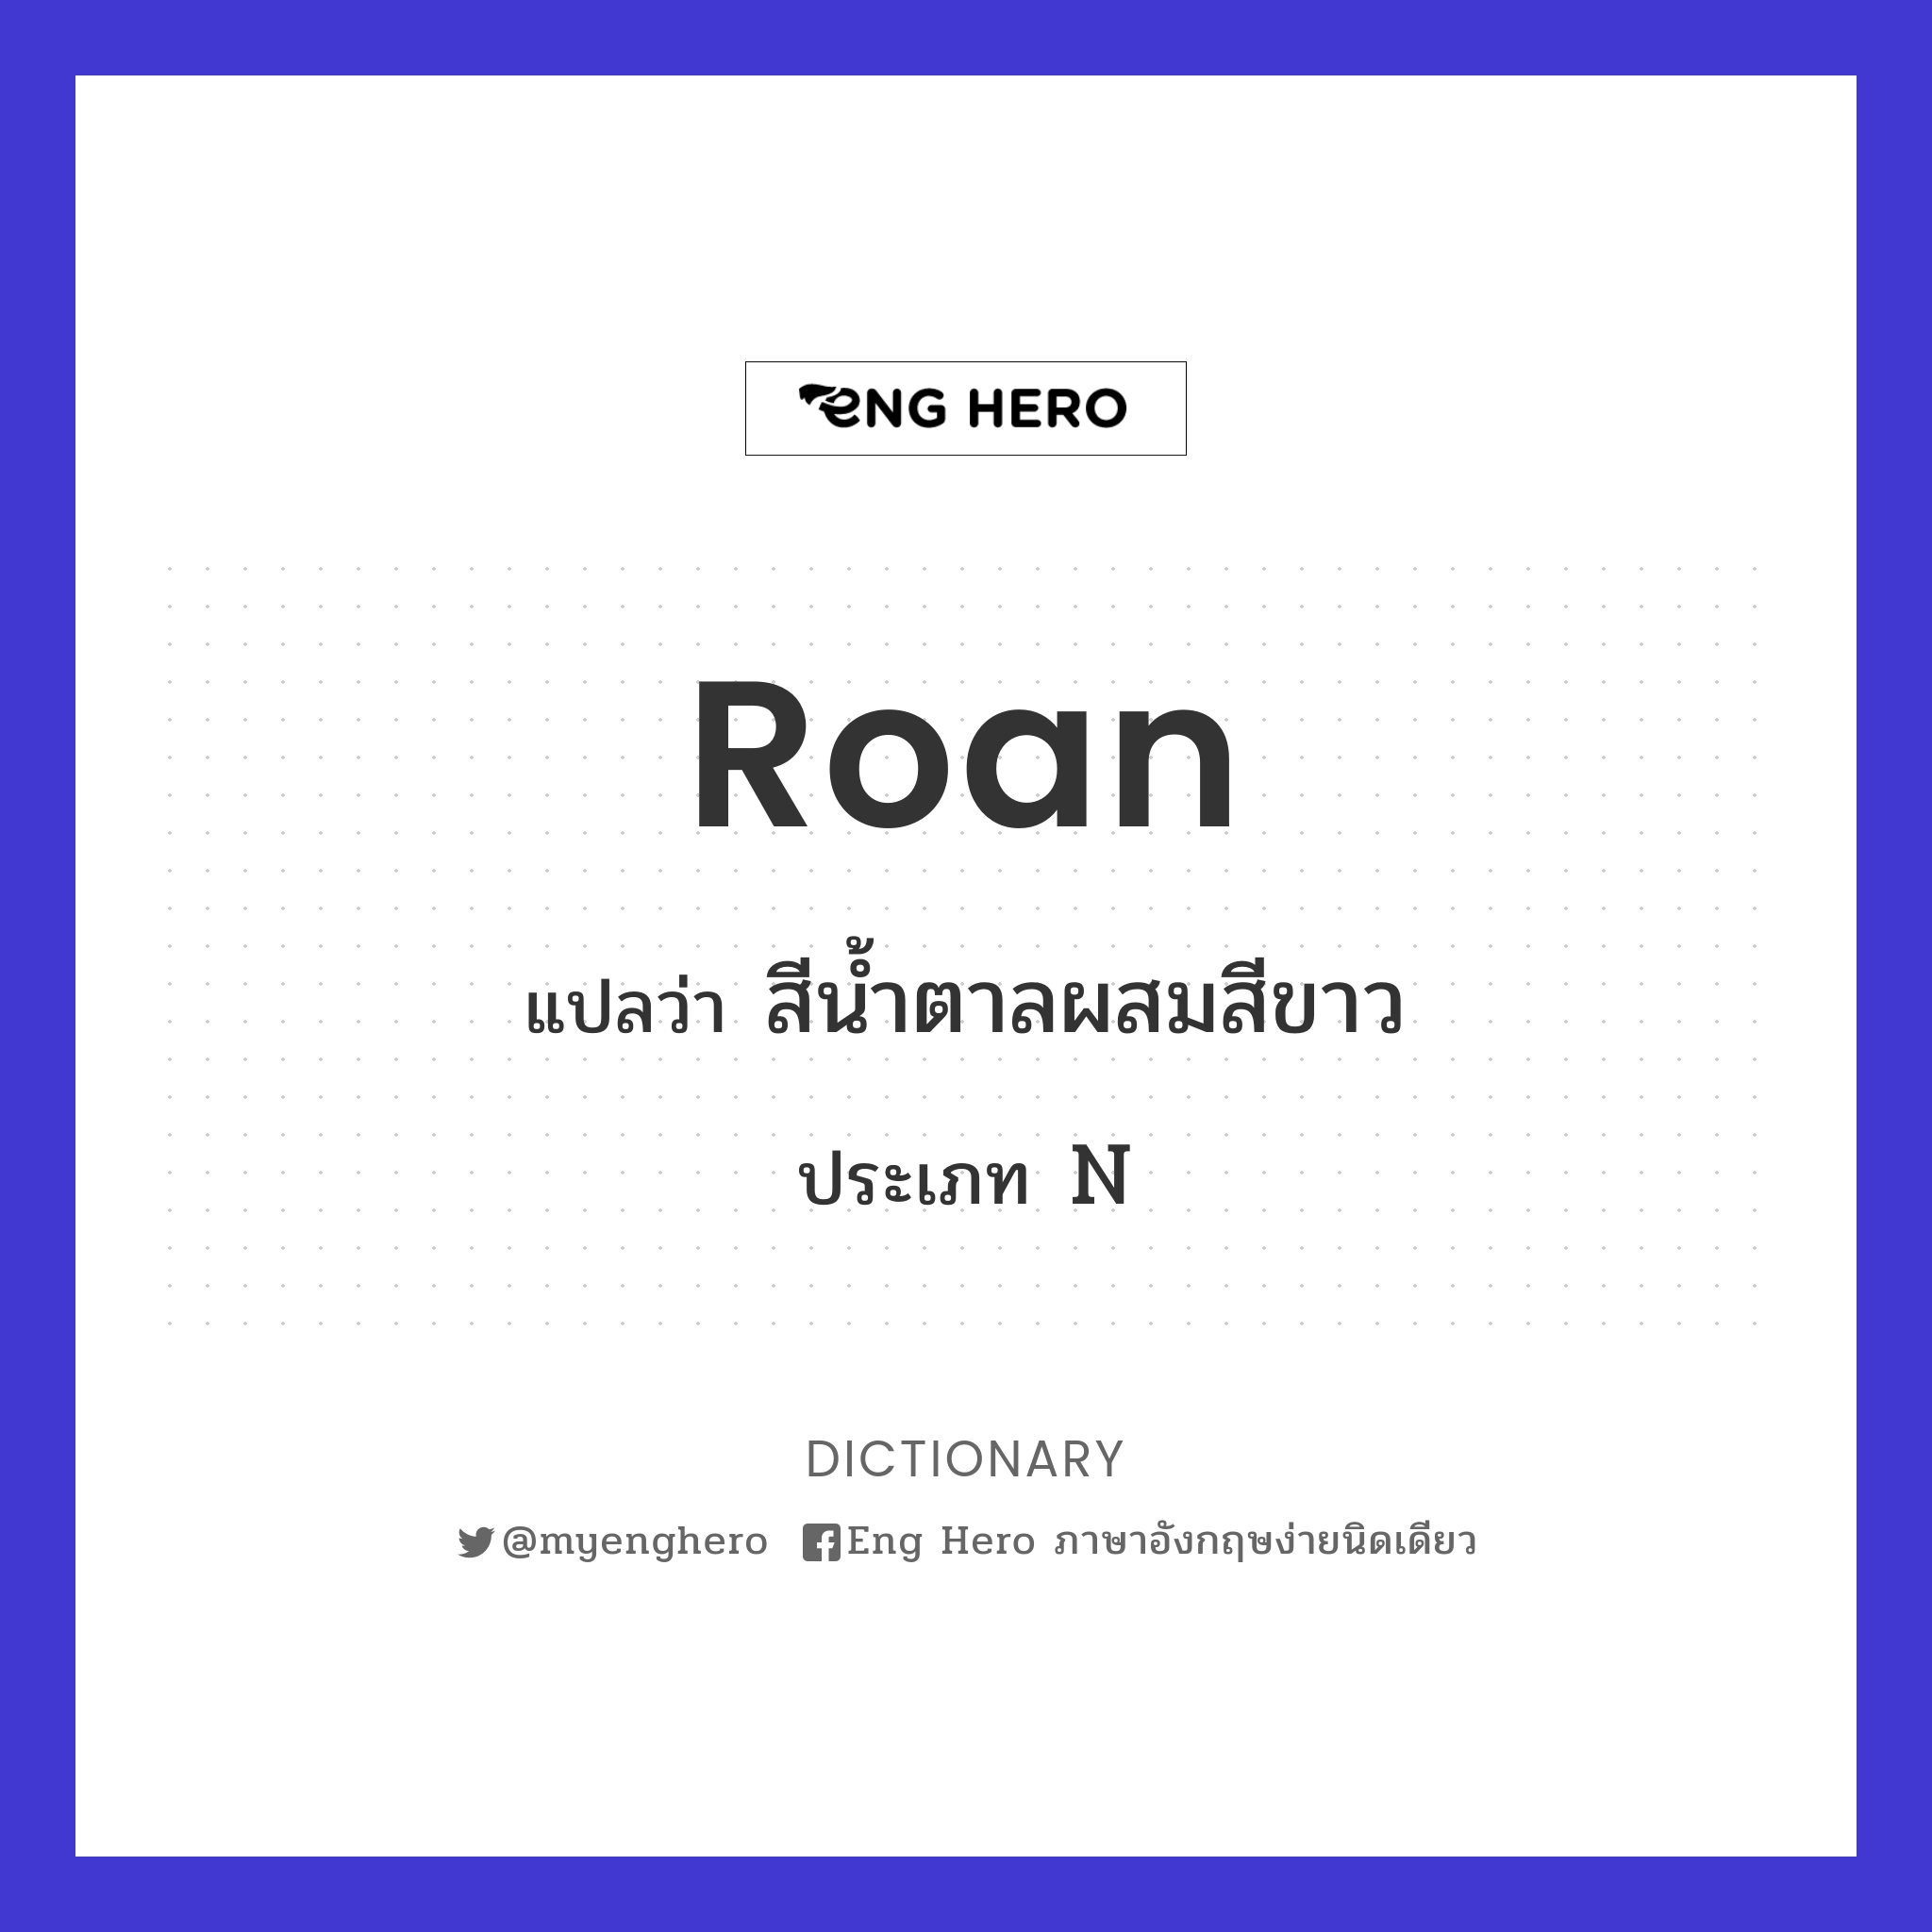 roan